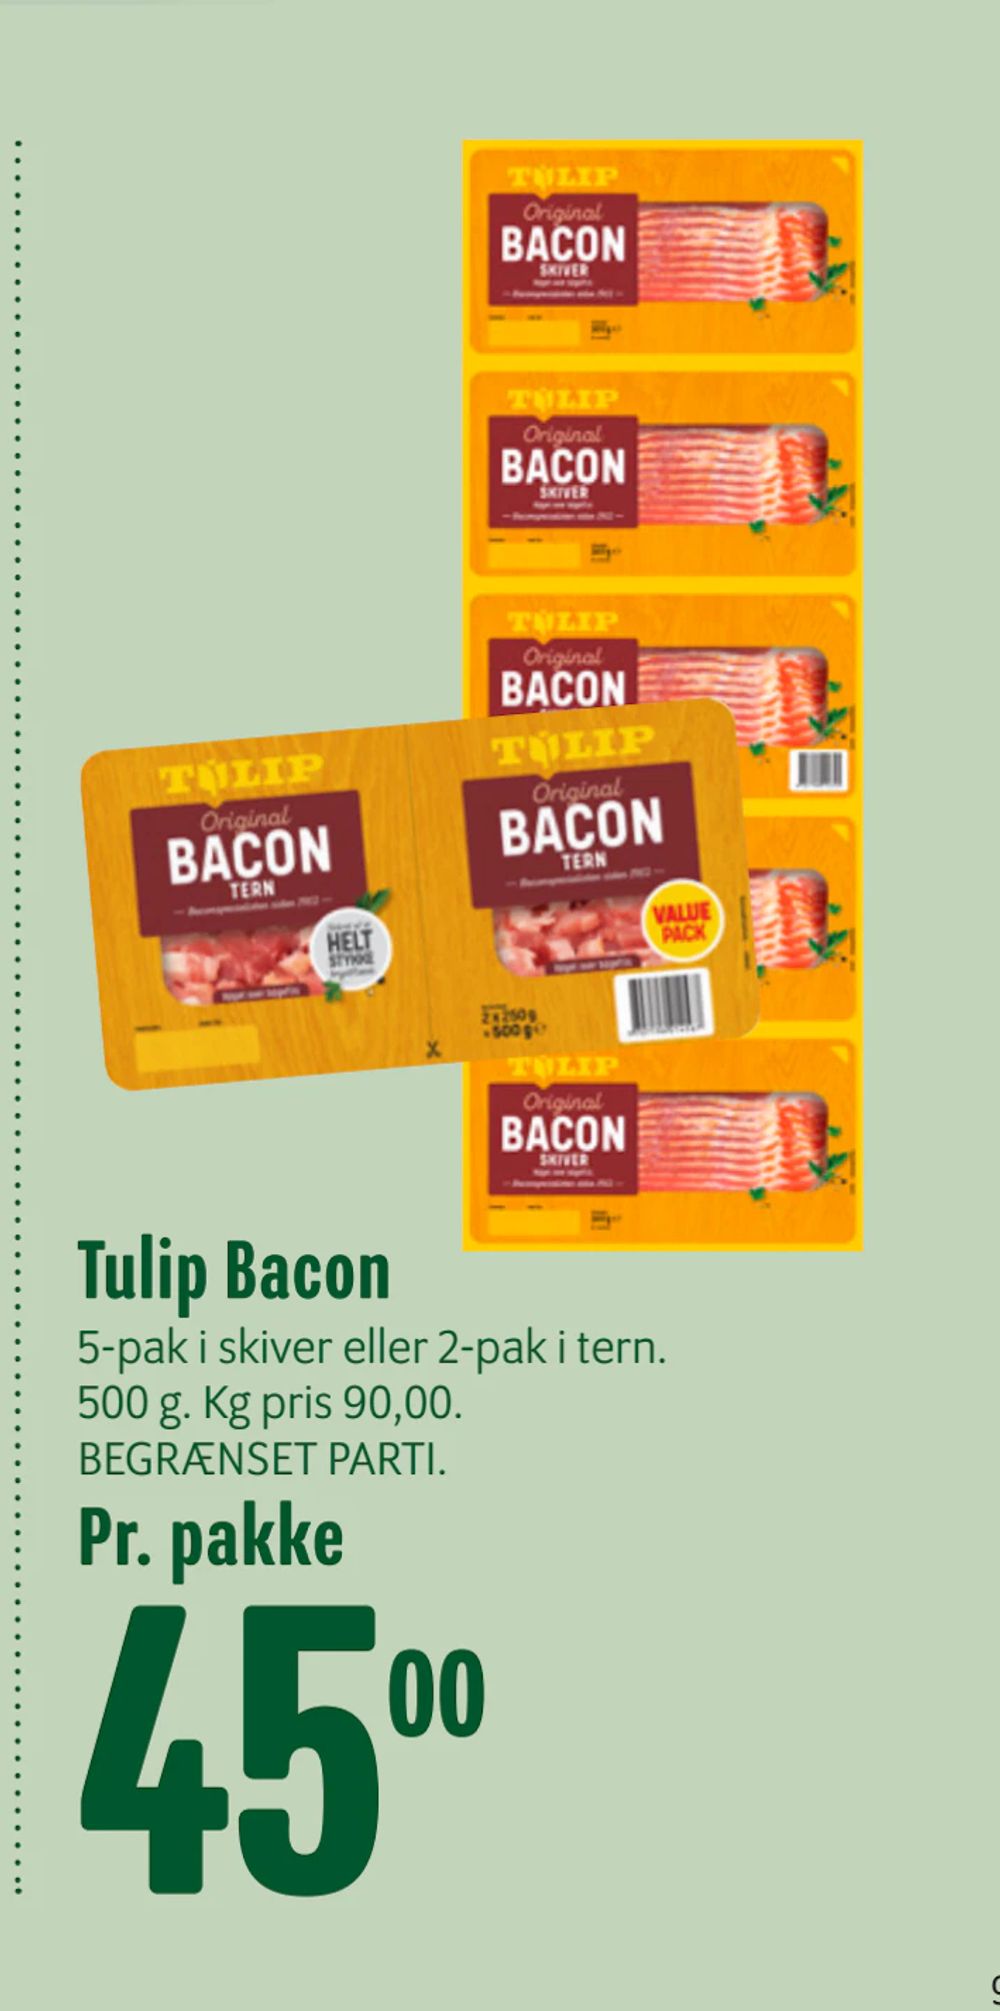 Tilbud på Tulip Bacon fra Min Købmand til 45 kr.